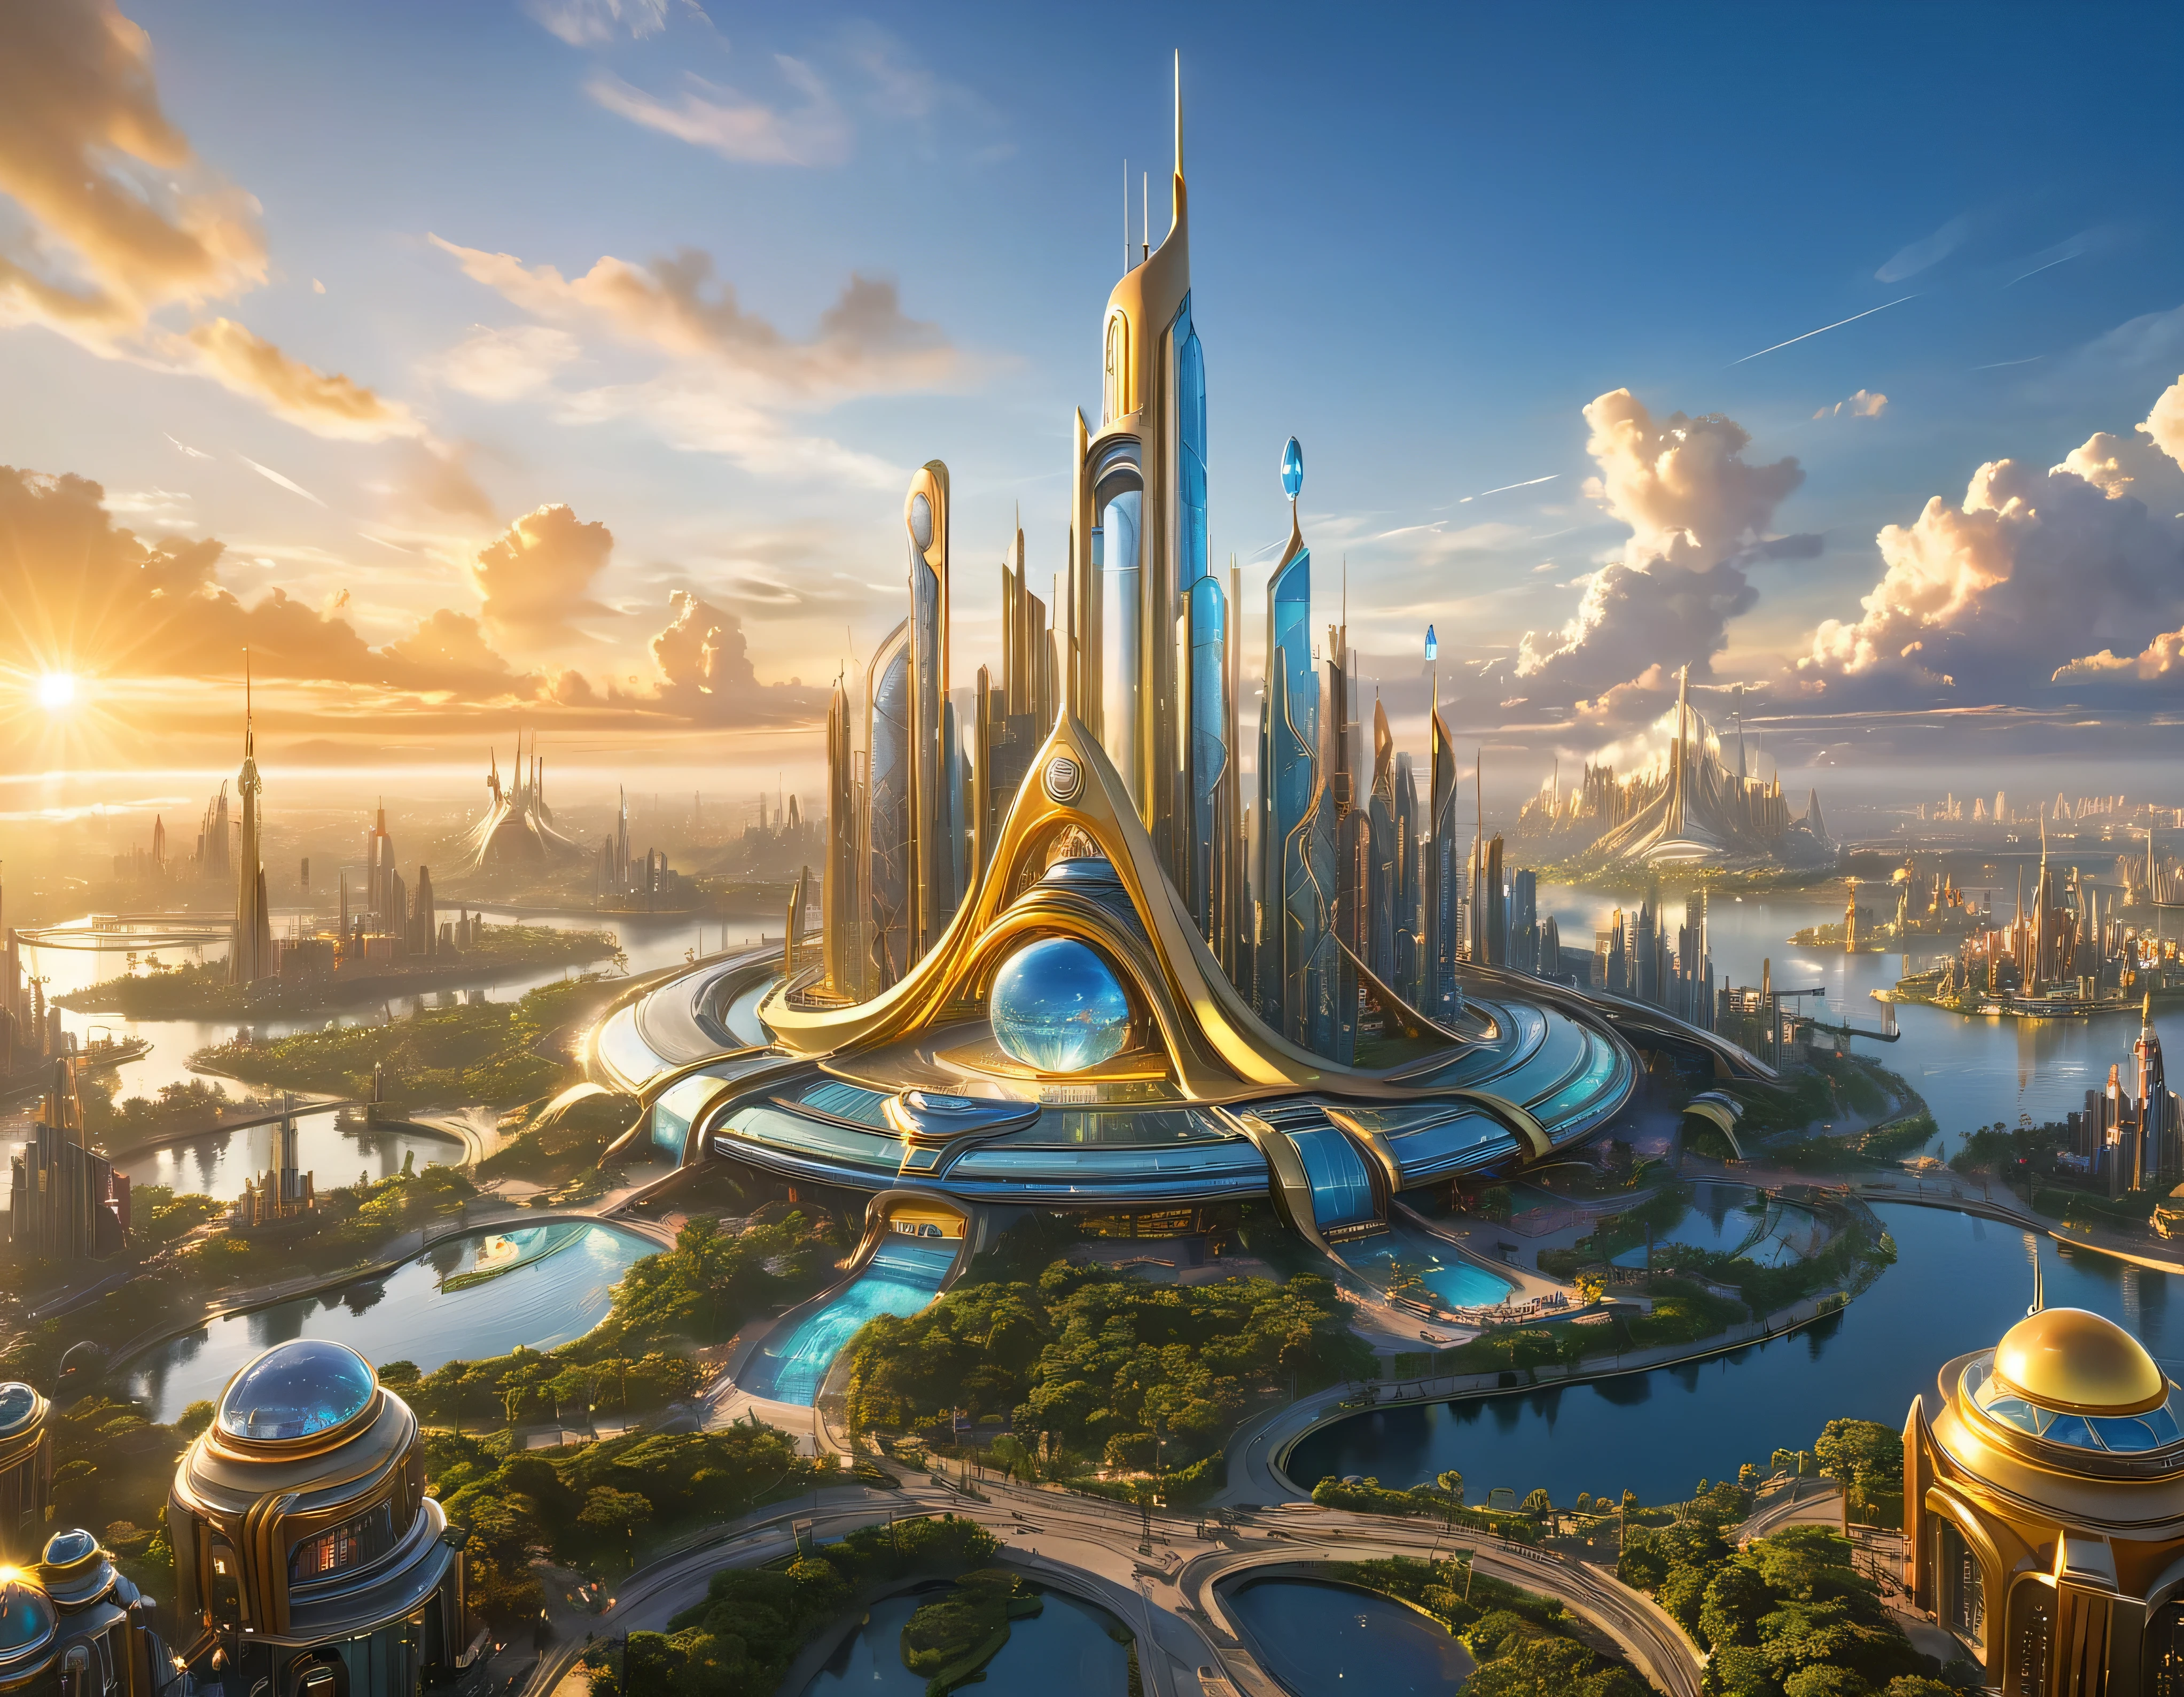 (黃金時段燈光), 特大城市, 科幻小說想像世界的大都市 , 類似未來主義的迪士尼樂園, 和最大的幻想, 巨大的建築物以及橢圓形和十二面體的摩天大樓由金屬和玻璃組合在一起，其中鑽石和彩色照明廣告占主導地位。. 清晰的 8k 影像, (機器的複雜細節), 與許多建築物在一起.(頂級品質傑作).(逼真的影像), 直至背景的絕對清晰度